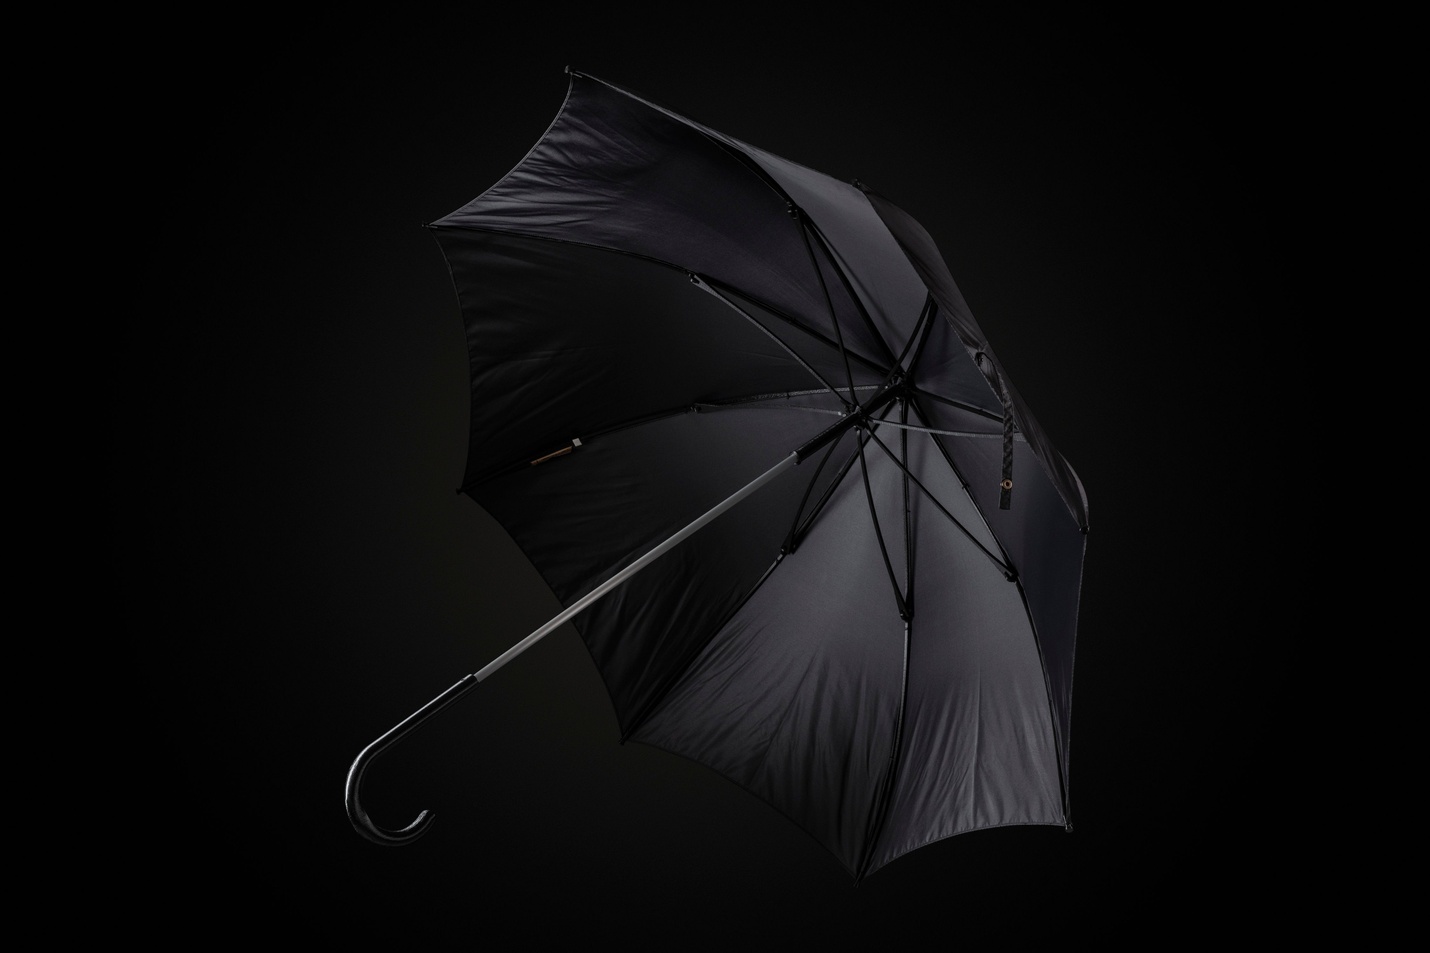 durable umbrella design studio